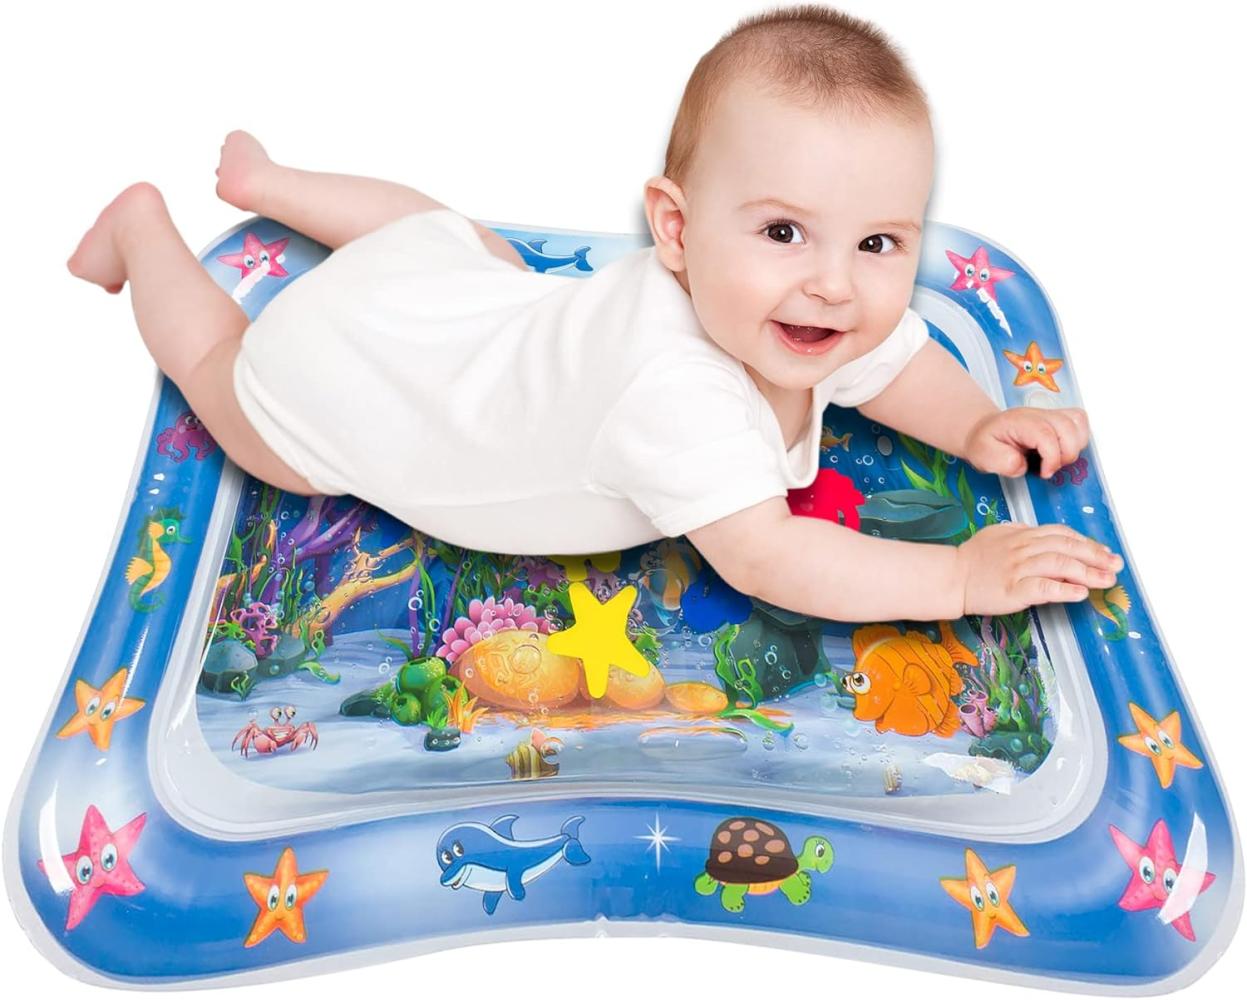 Retoo Aufblasbare und Sensorisches Wassermatte für Baby mit Maßen 66 x 50cm, PVC Wasserspielmatte für 3, 6, 9 Monate, Perfekte für Frühe Entwicklung, Spielzeug Das Stimulationswachstum für Ihre Baby Bild 1